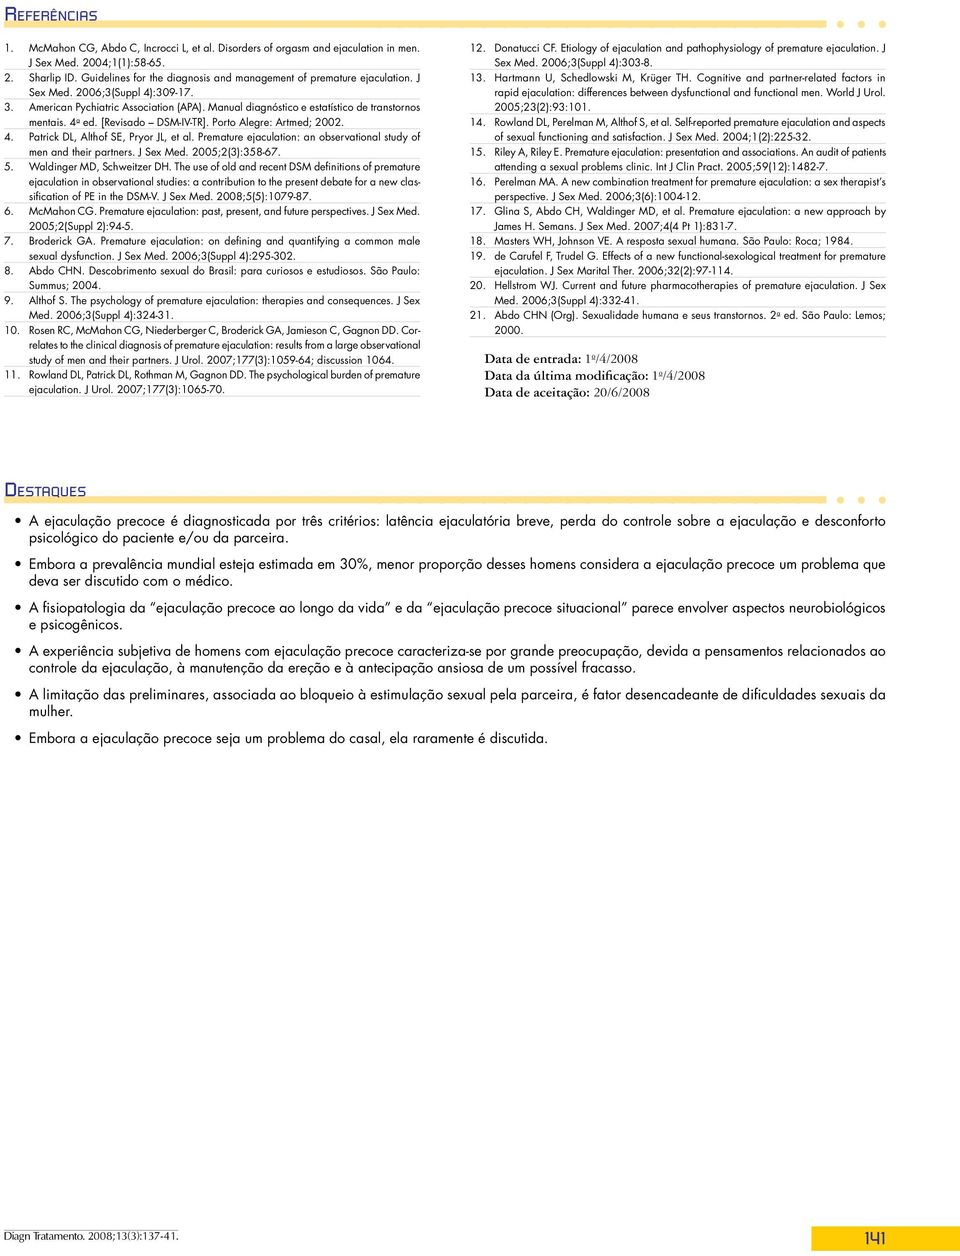 Manual diagnóstico e estatístico de transtornos mentais. 4 a ed. [Revisado DSM-IV-TR]. Porto Alegre: Artmed; 2002. 4. Patrick DL, Althof SE, Pryor JL, et al.